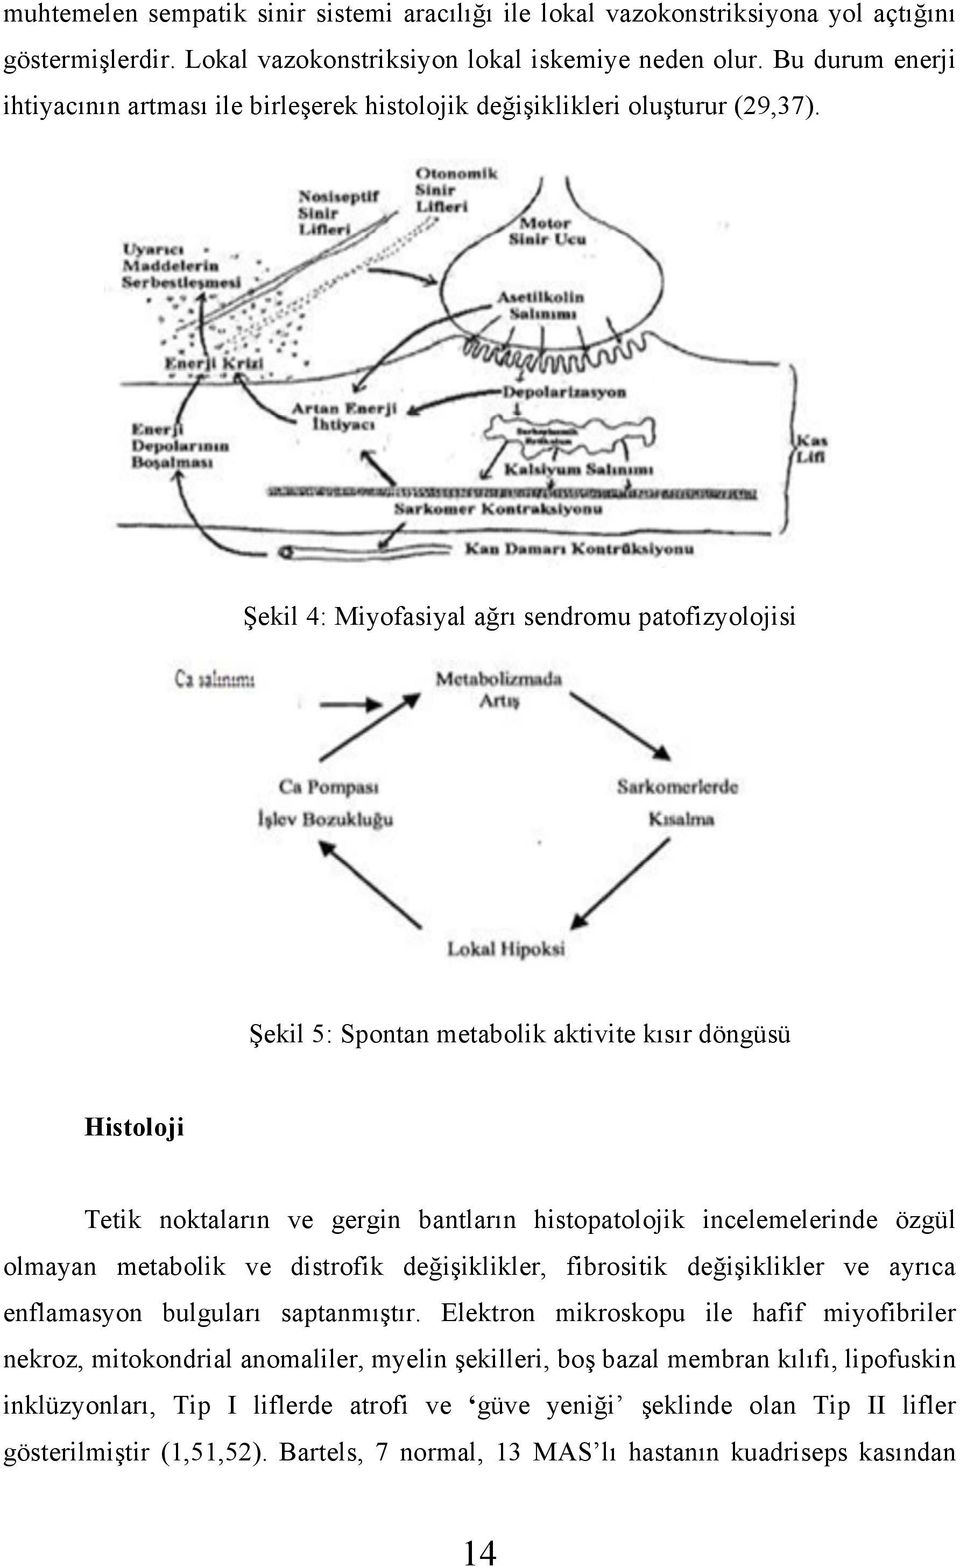 Şekil 4: Miyofasiyal ağrı sendromu patofizyolojisi Şekil 5: Spontan metabolik aktivite kısır döngüsü Histoloji Tetik noktaların ve gergin bantların histopatolojik incelemelerinde özgül olmayan